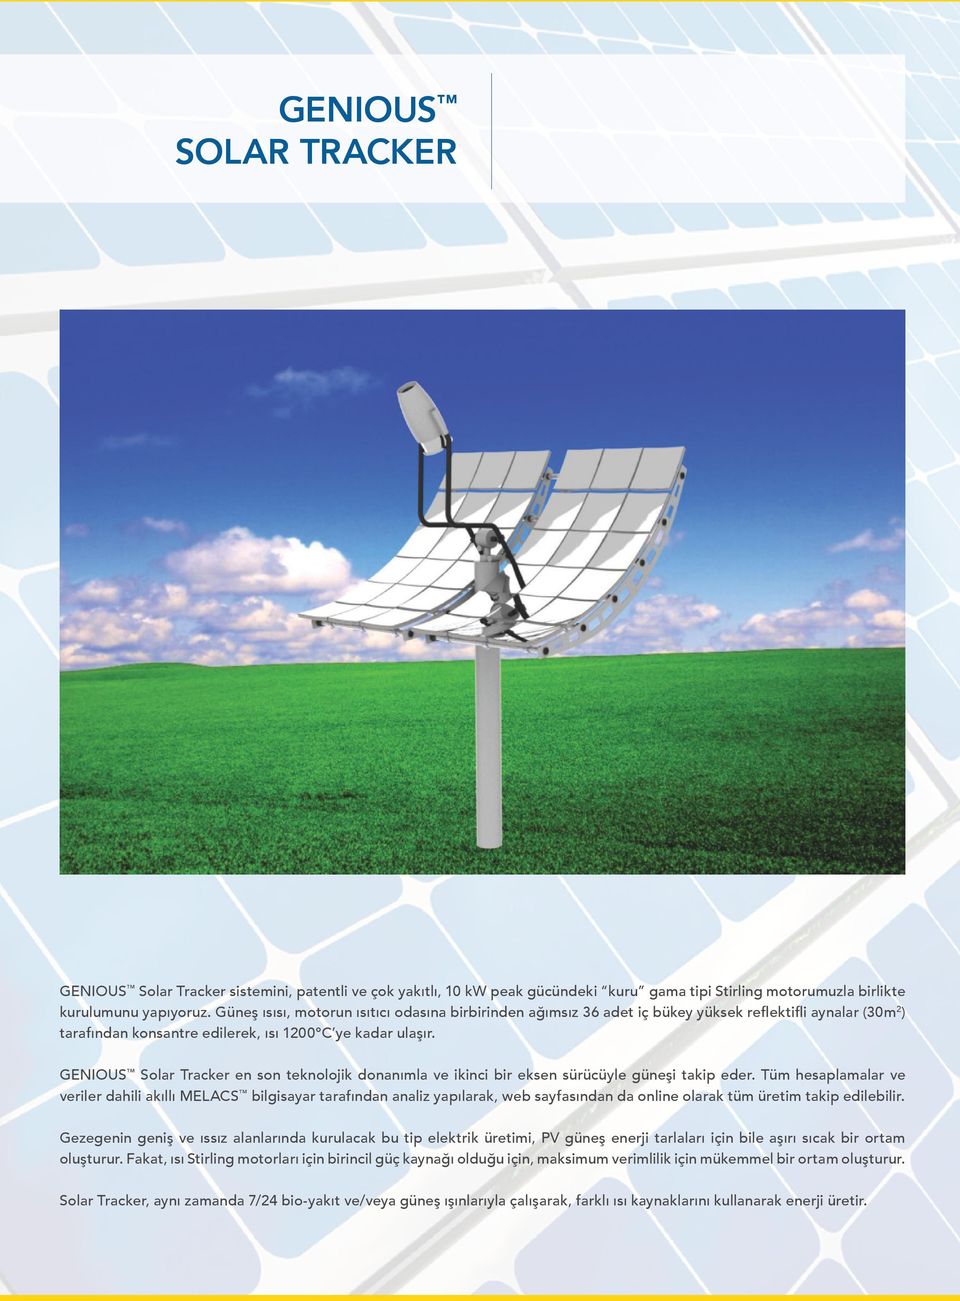 GENIOUS Solar Tracker en son teknolojik donanımla ve ikinci bir eksen sürücüyle güneşi takip eder.